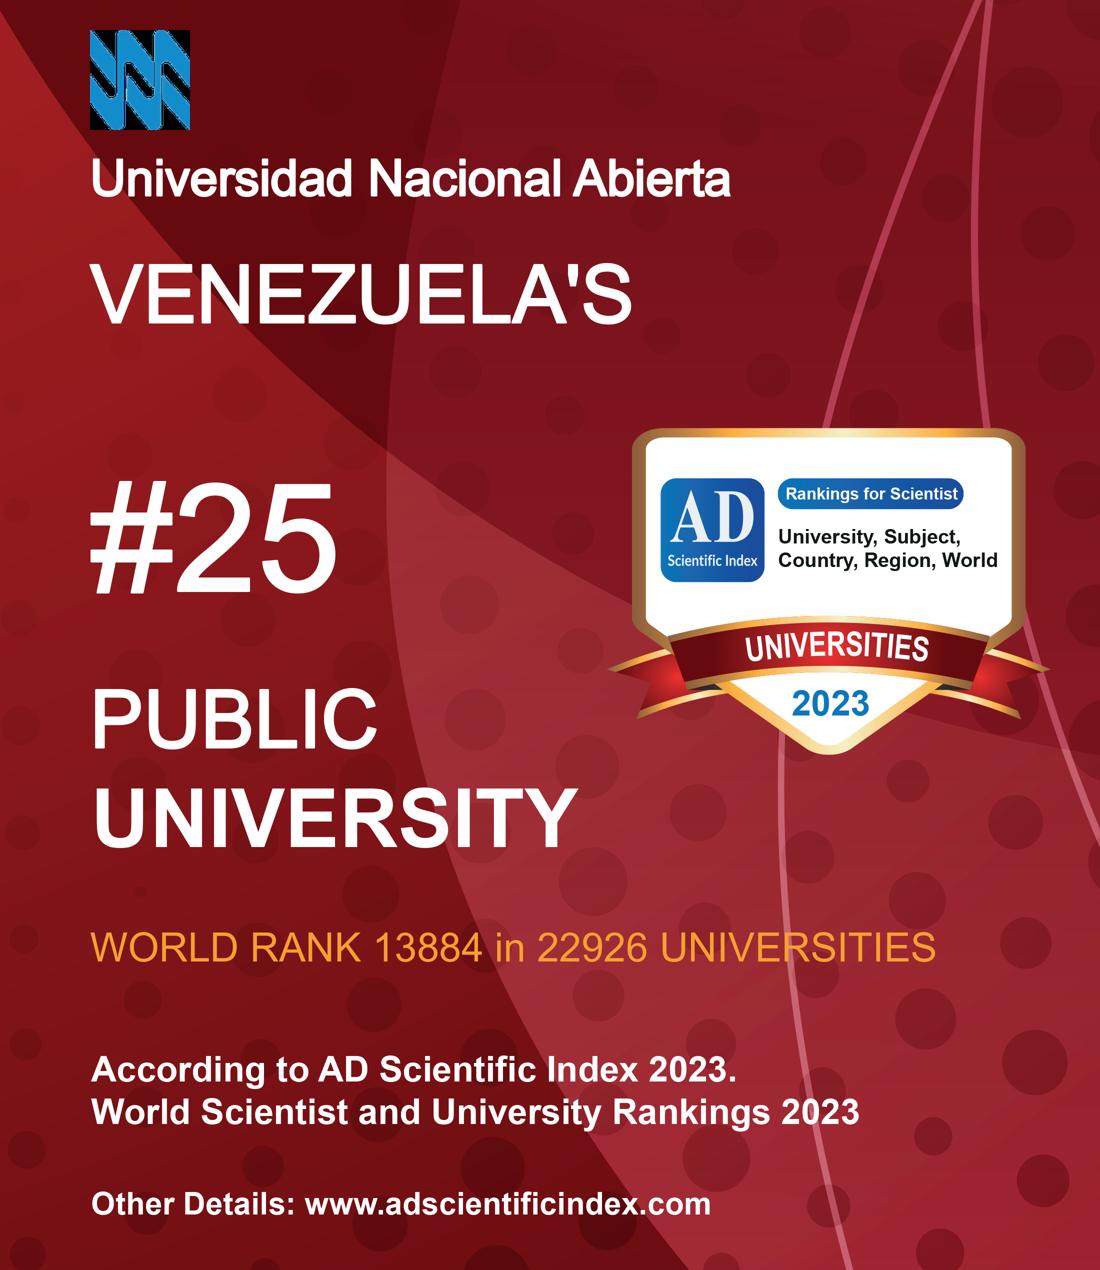 Universidad Nacional Abierta